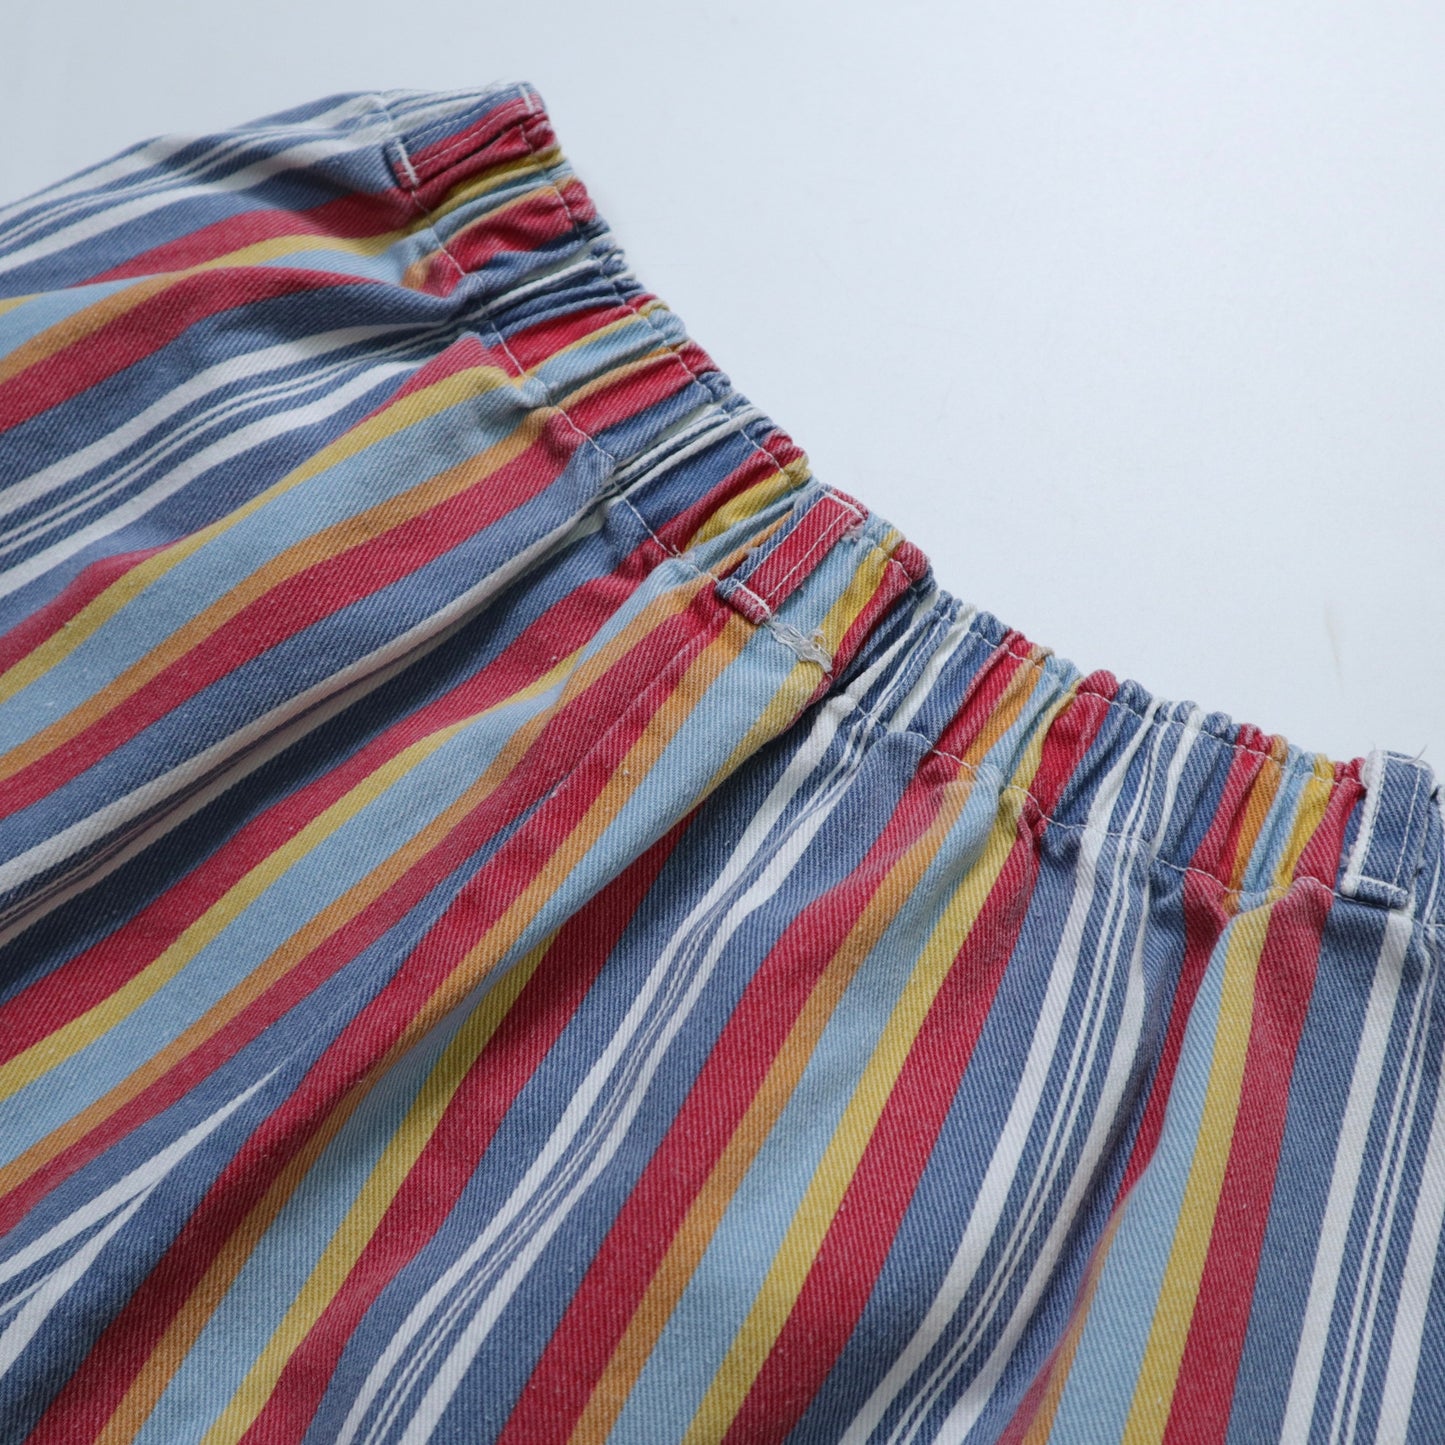 （25W)80s 美國製 彩色條紋斜紋純棉短褲 talon42拉鍊